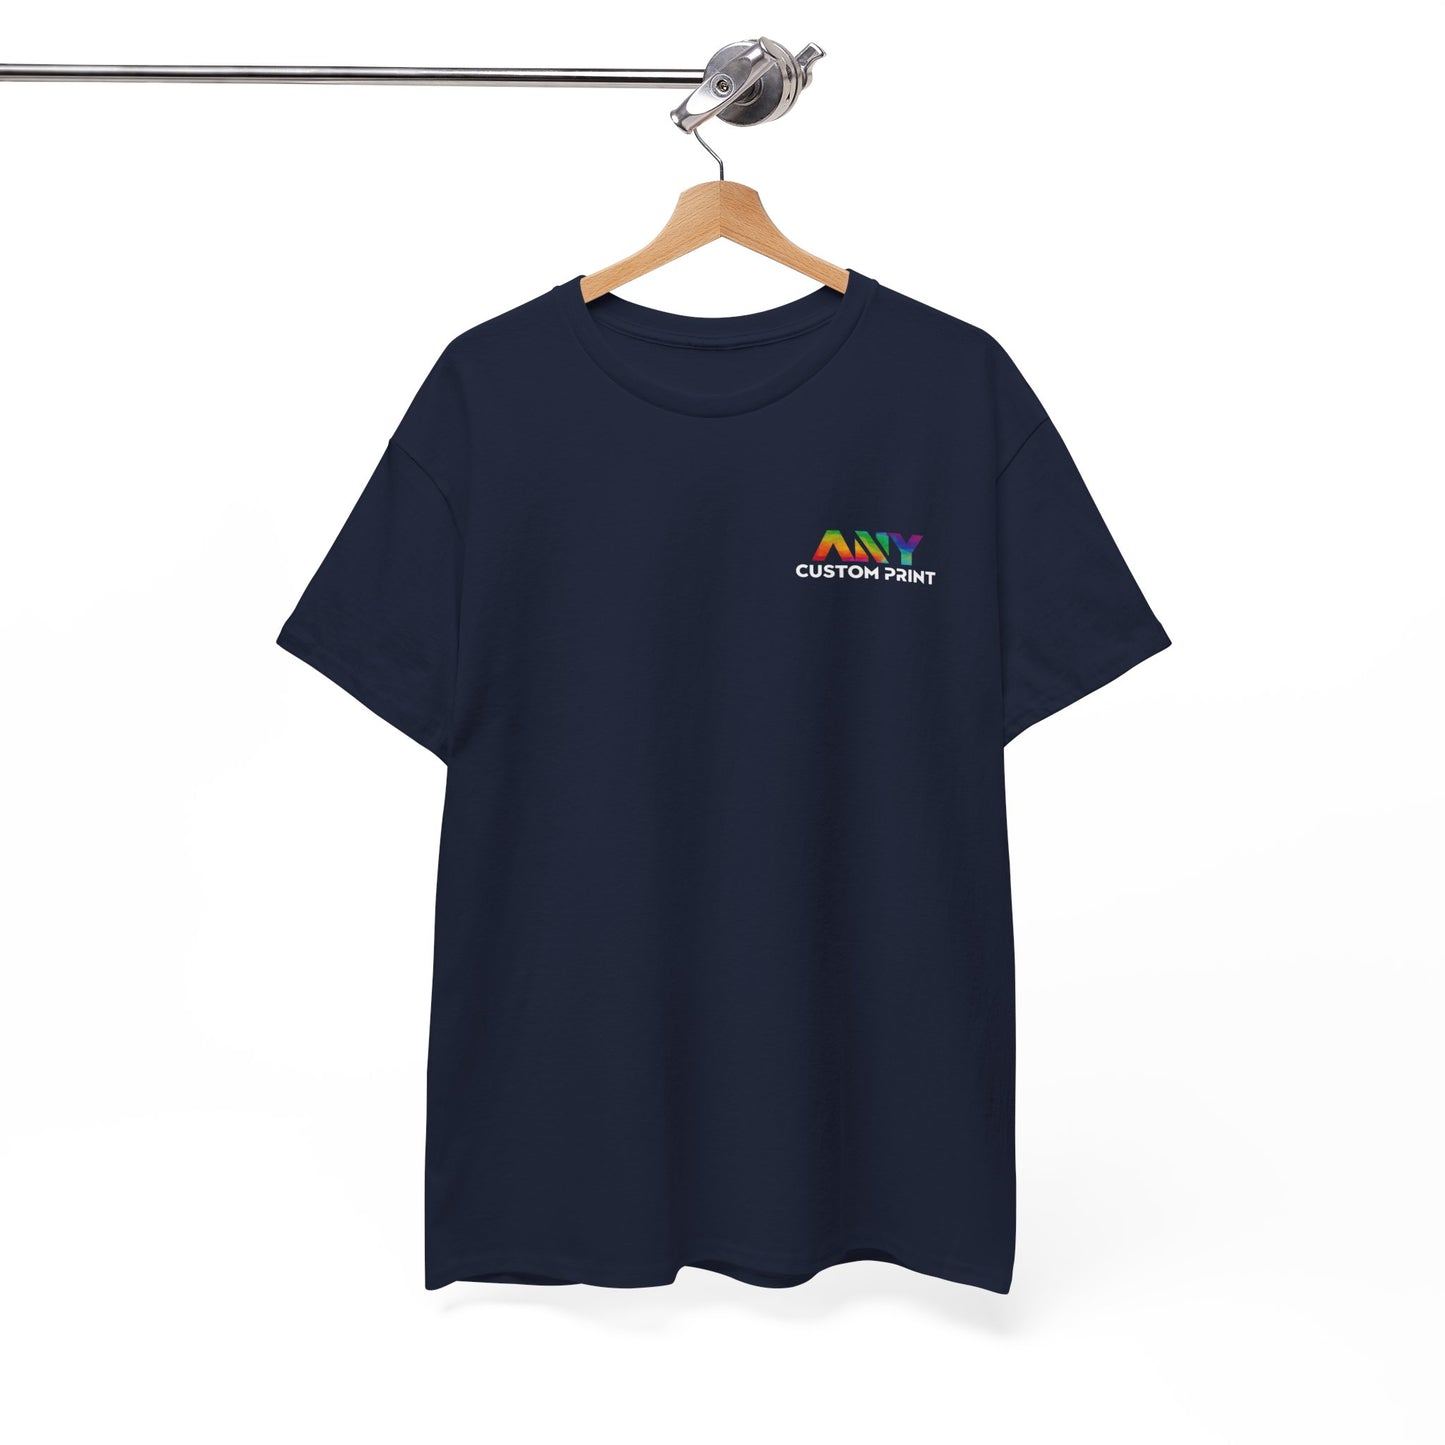 T-Shirts UniSex Front DTF Print Premium 100% Cotton